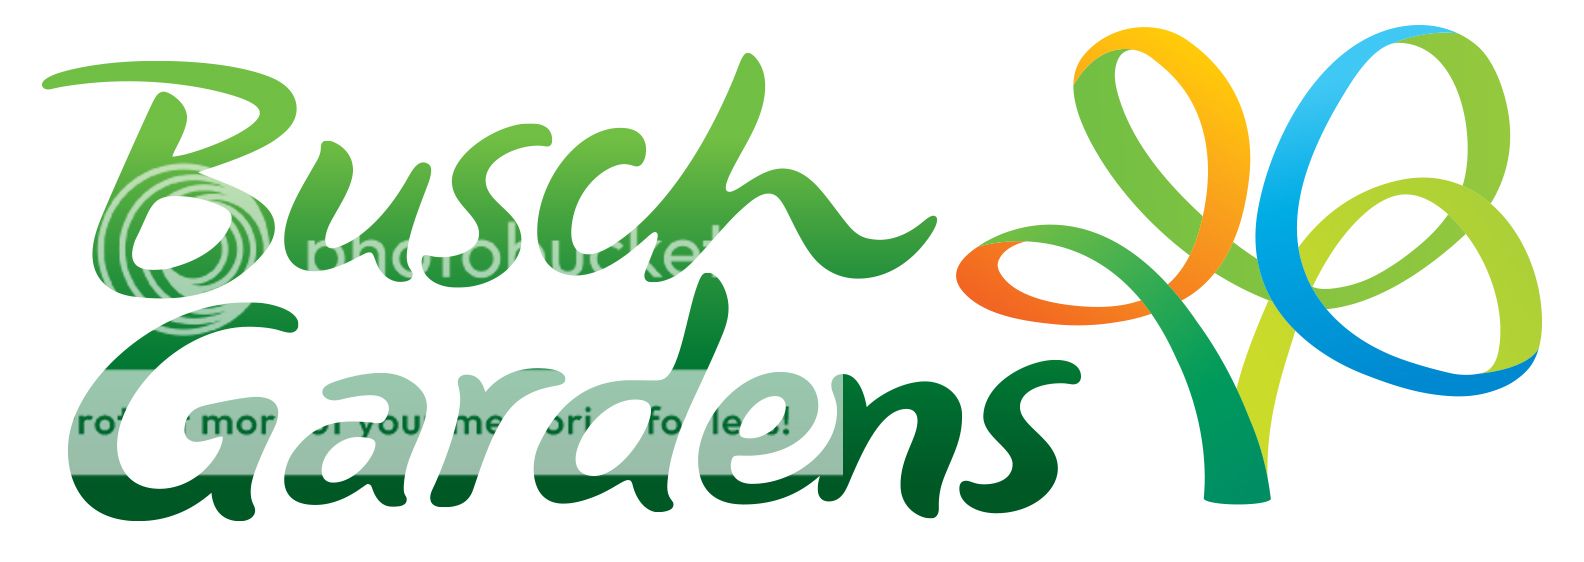 buschgardens_logo2_zpsbe313a02.jpg